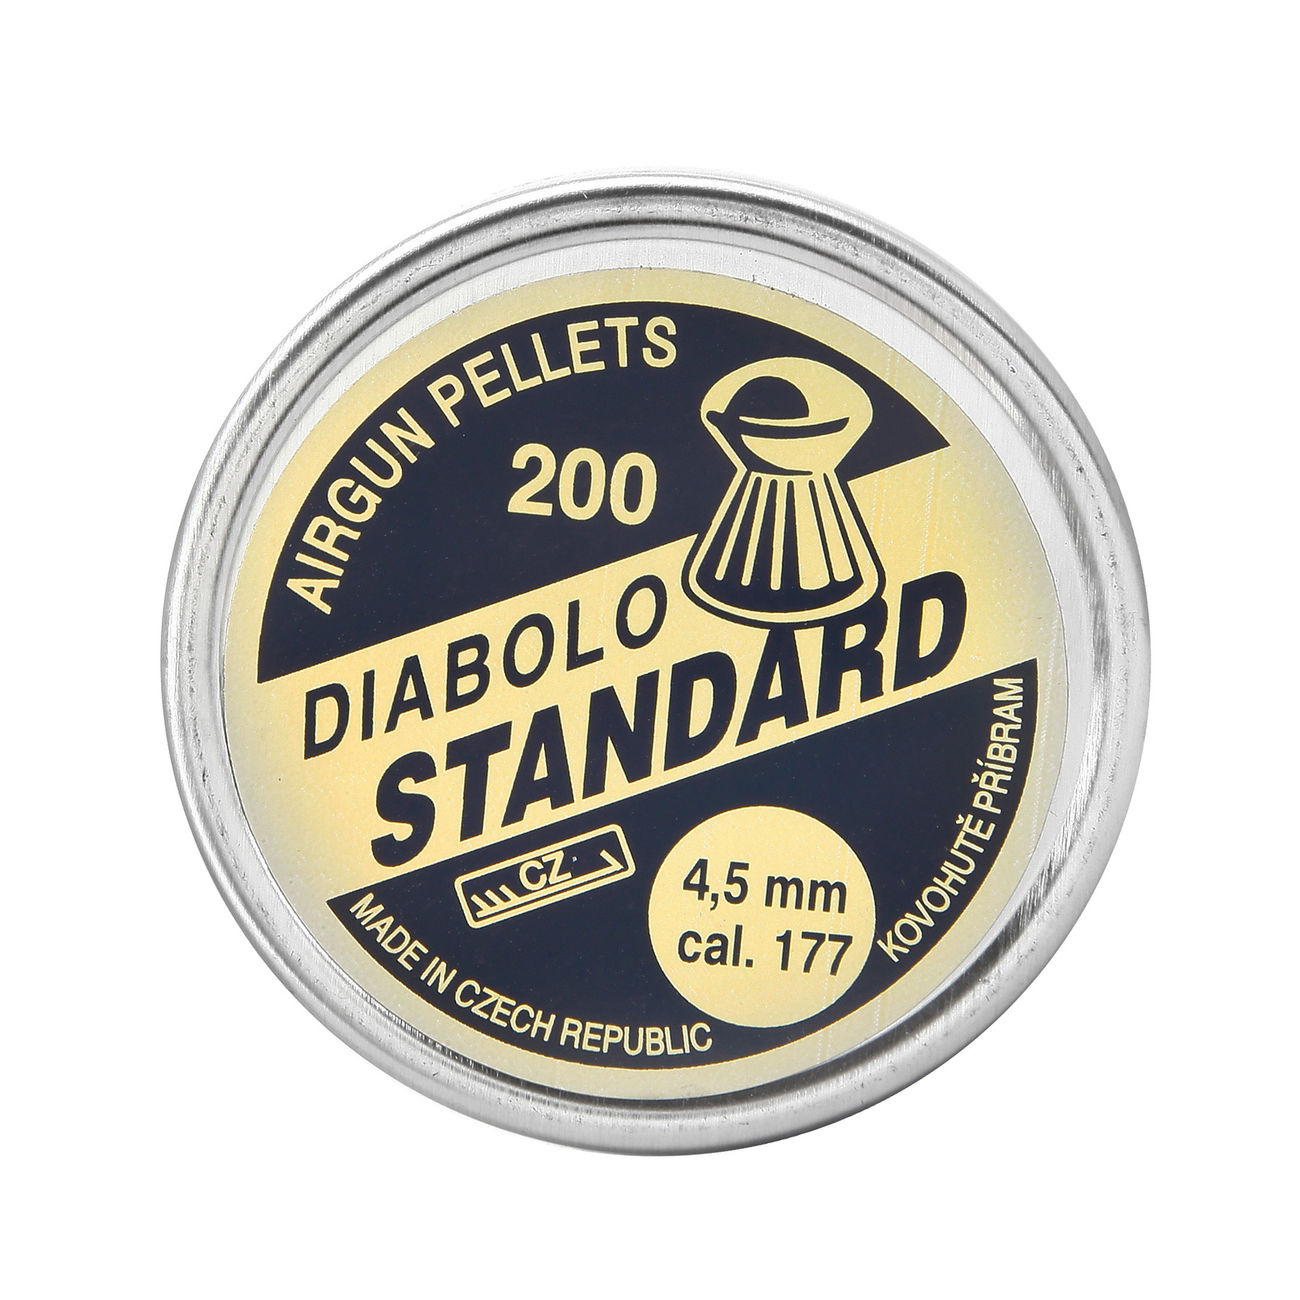 Kovohute Diabolo Standard 4,5 mm 200 Stck Bild 3